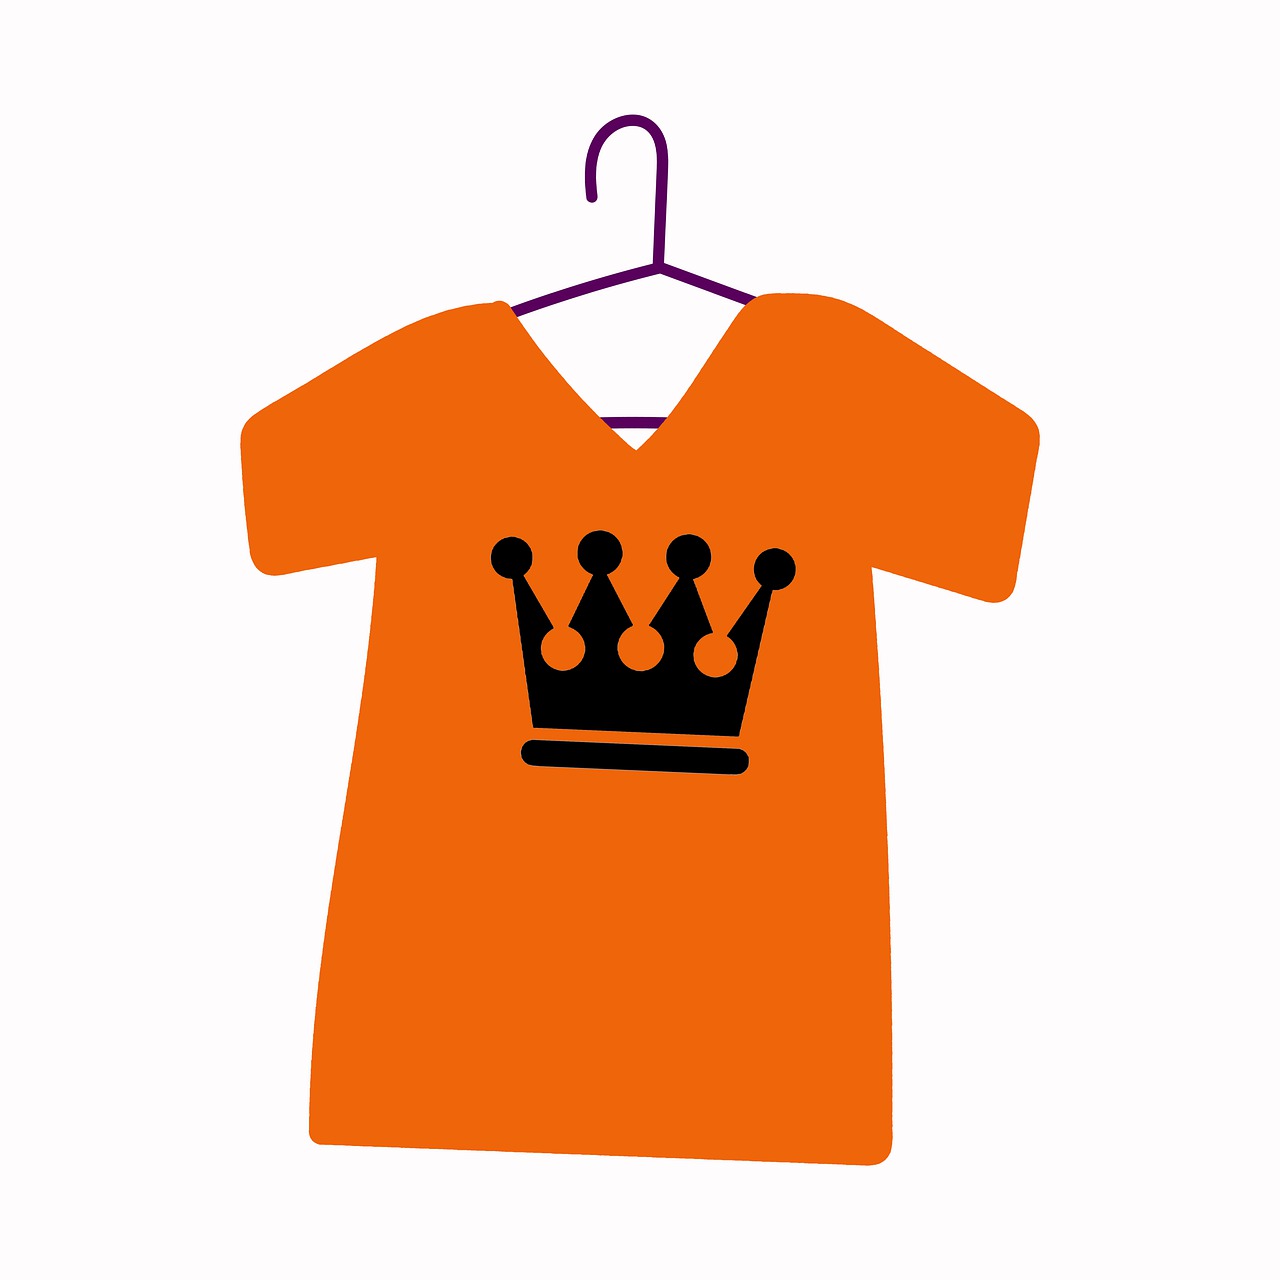 Crown Shirt Orange Shirt Clothing  - BiancaVanDijk / Pixabay